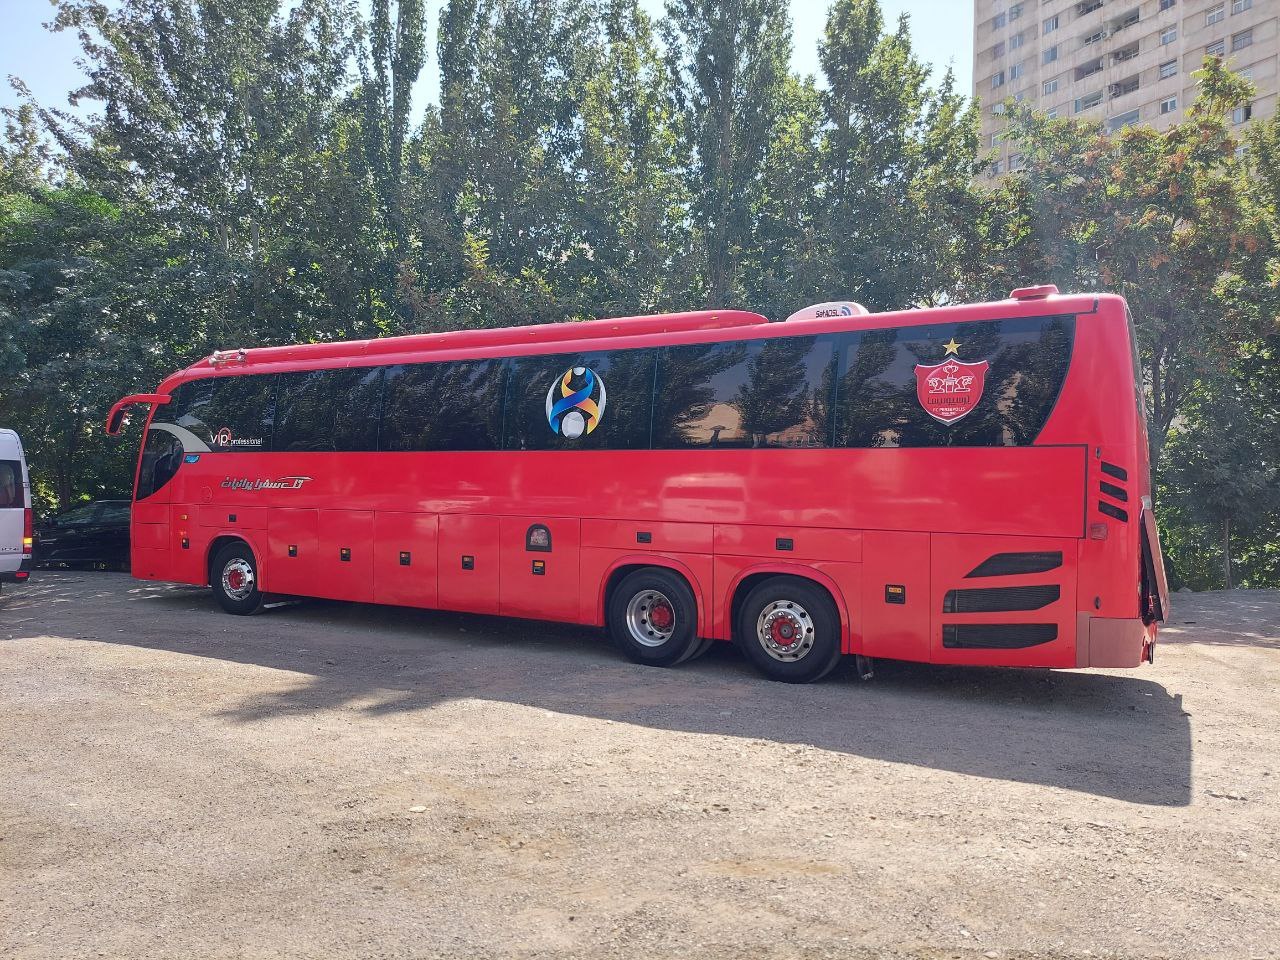 تصویری از اتوبوس اختصاصی النصر در تهران